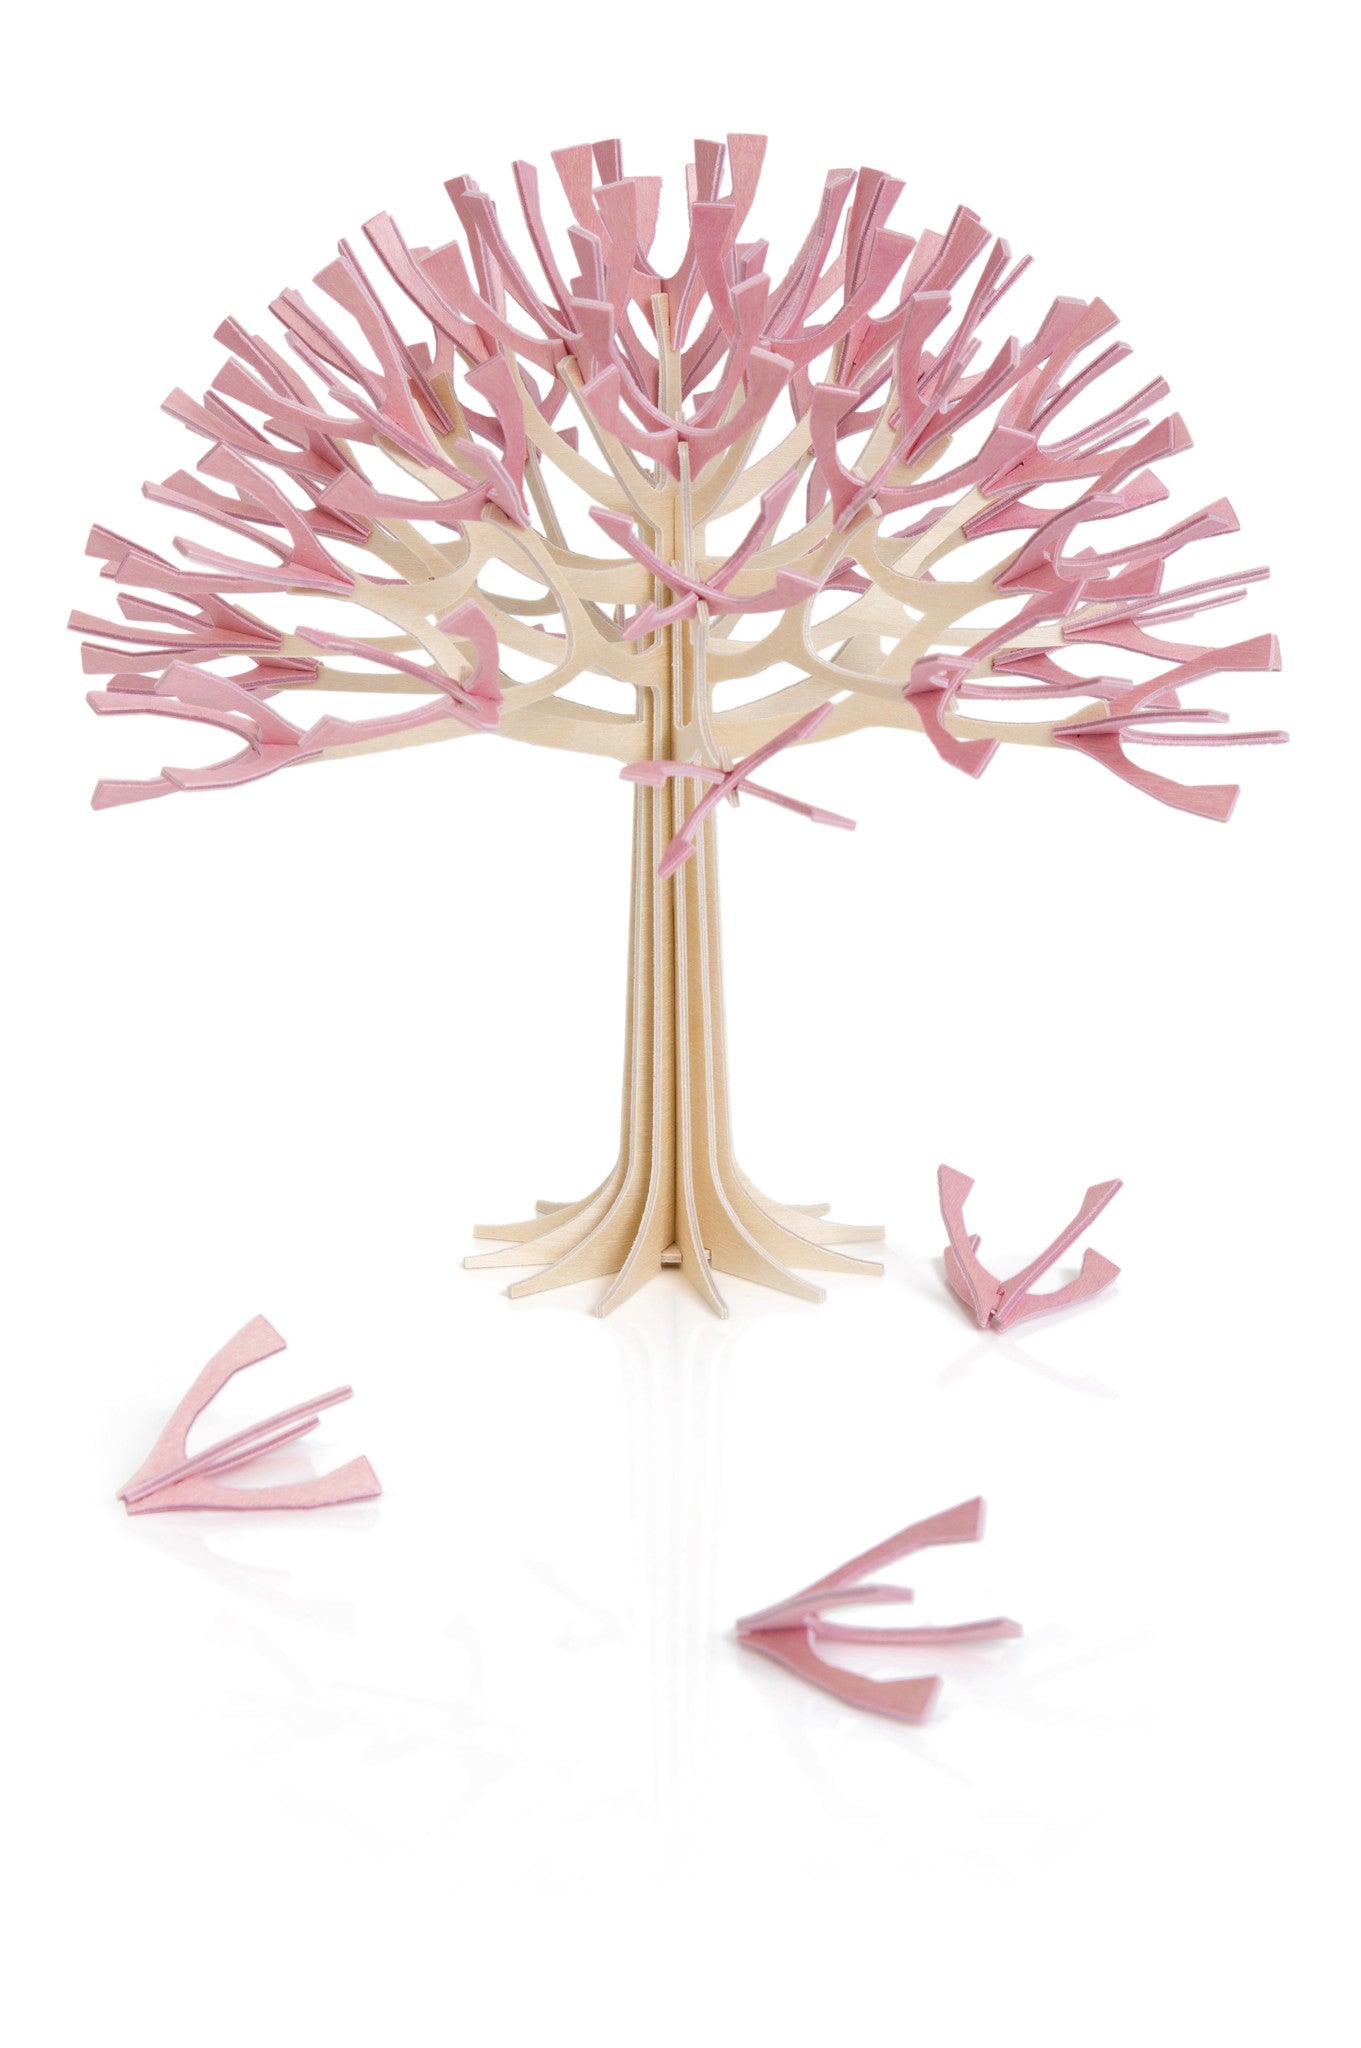 Season Tree by Lovi, envelope size